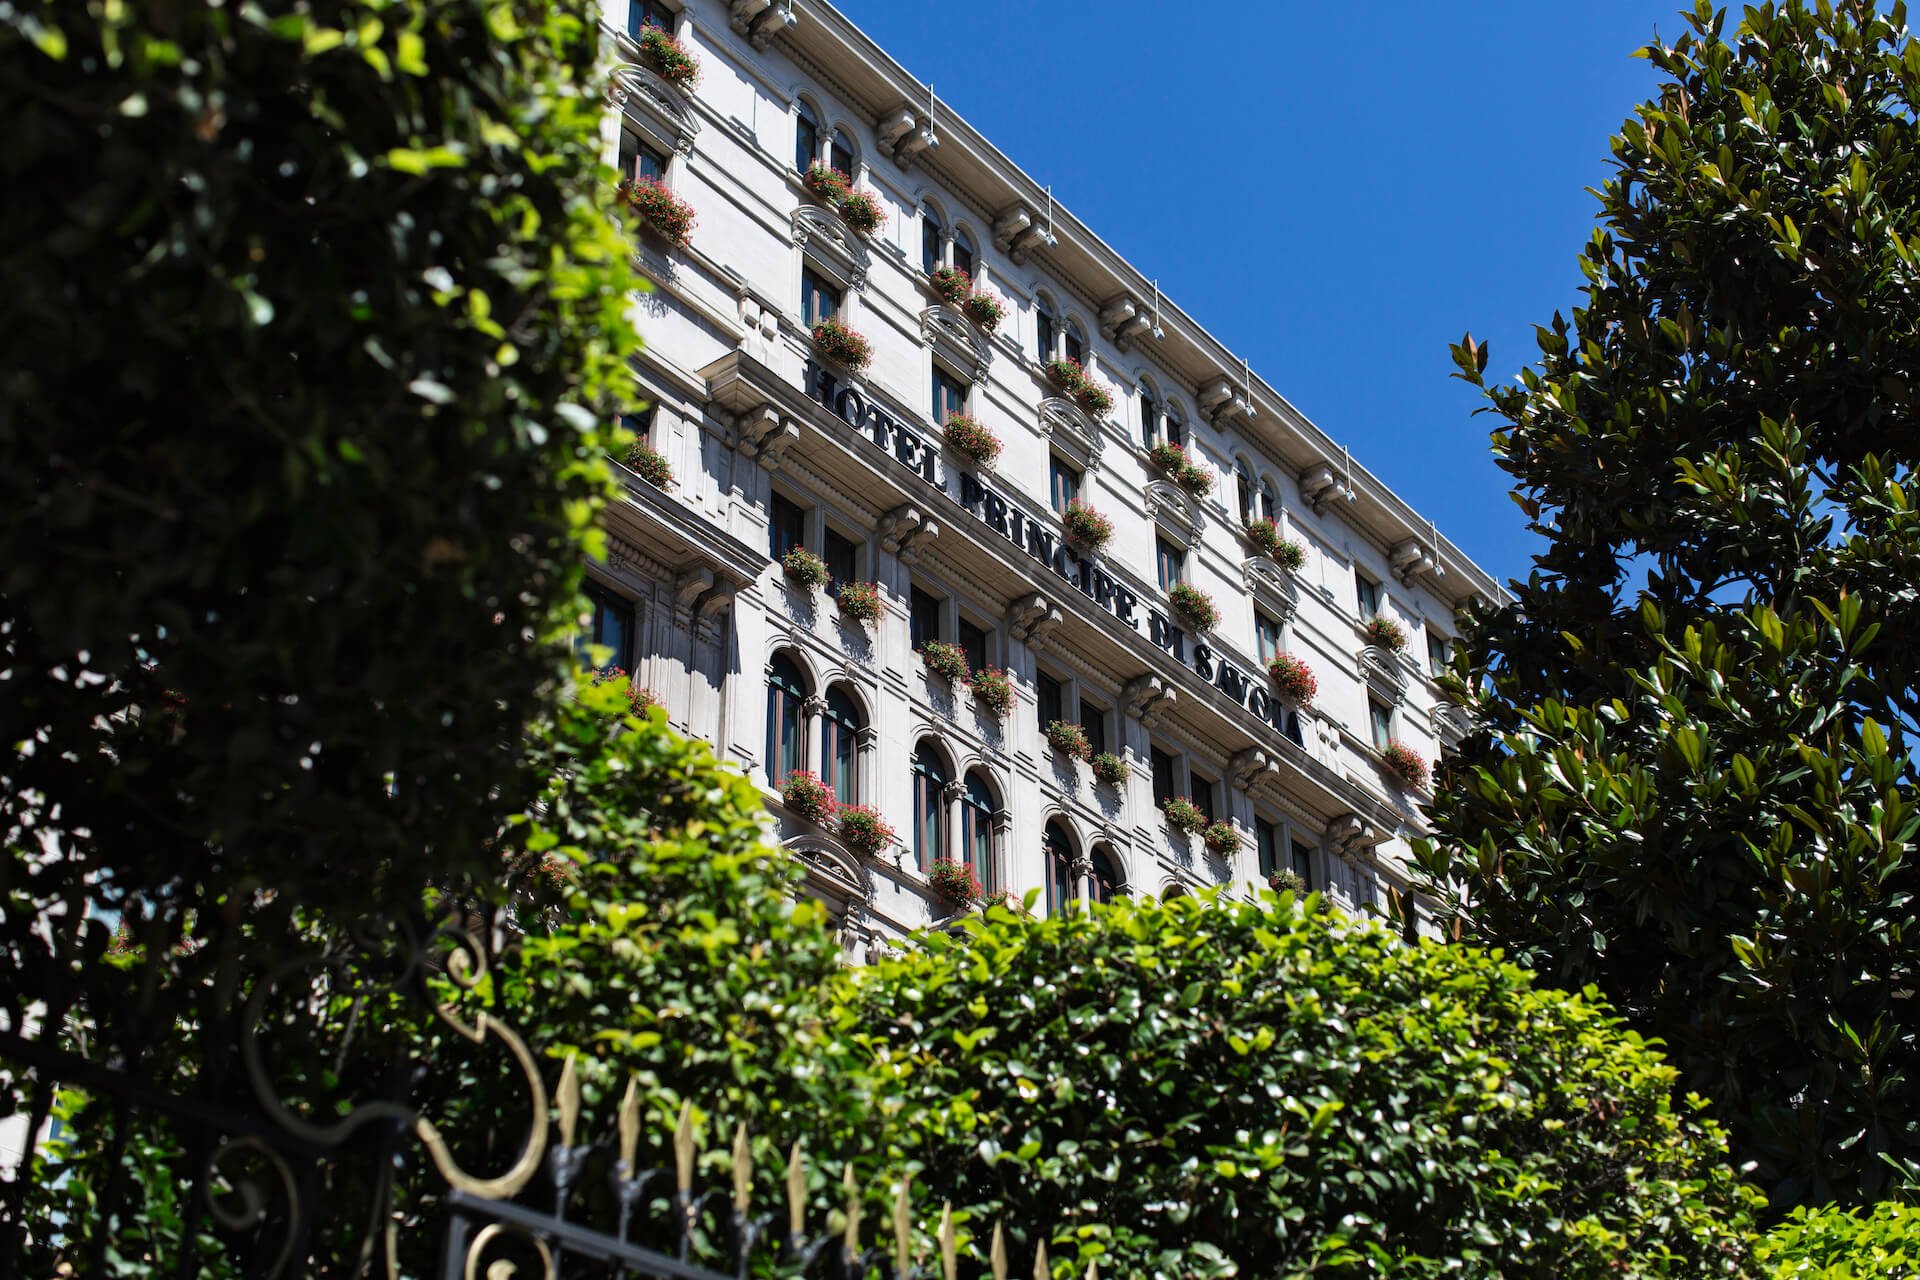 Principe Di Savoia Milan Hotel CubeCollective_PDS_Exterior_009.jpg